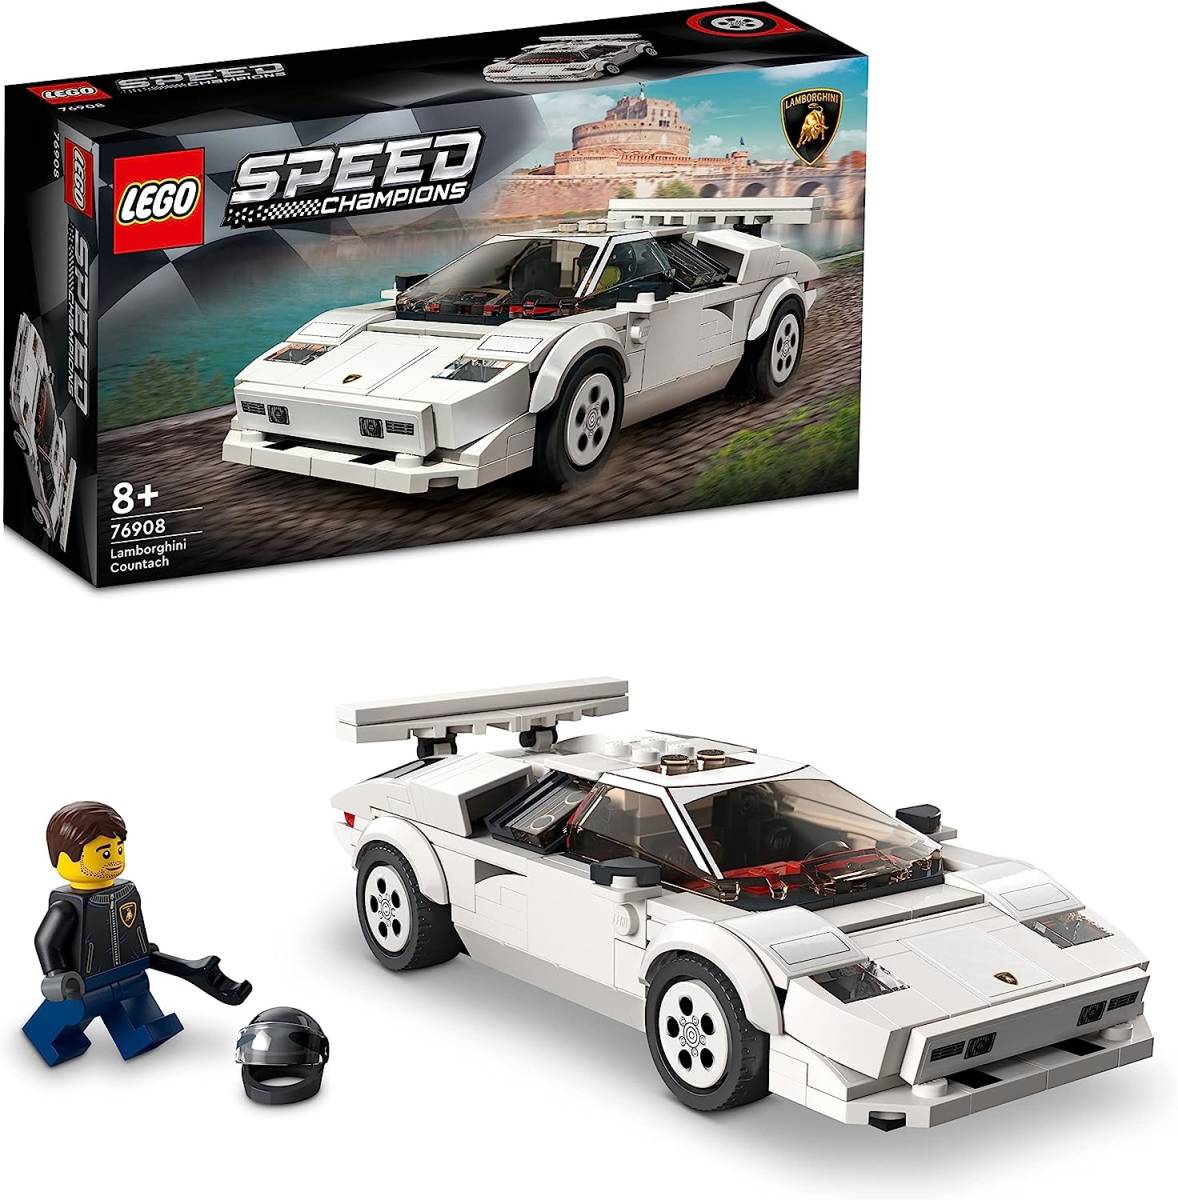 【送料無料】【匿名配送】【新品】レゴ(LEGO) スピードチャンピオン ランボルギーニ・カウンタック 76908_画像1